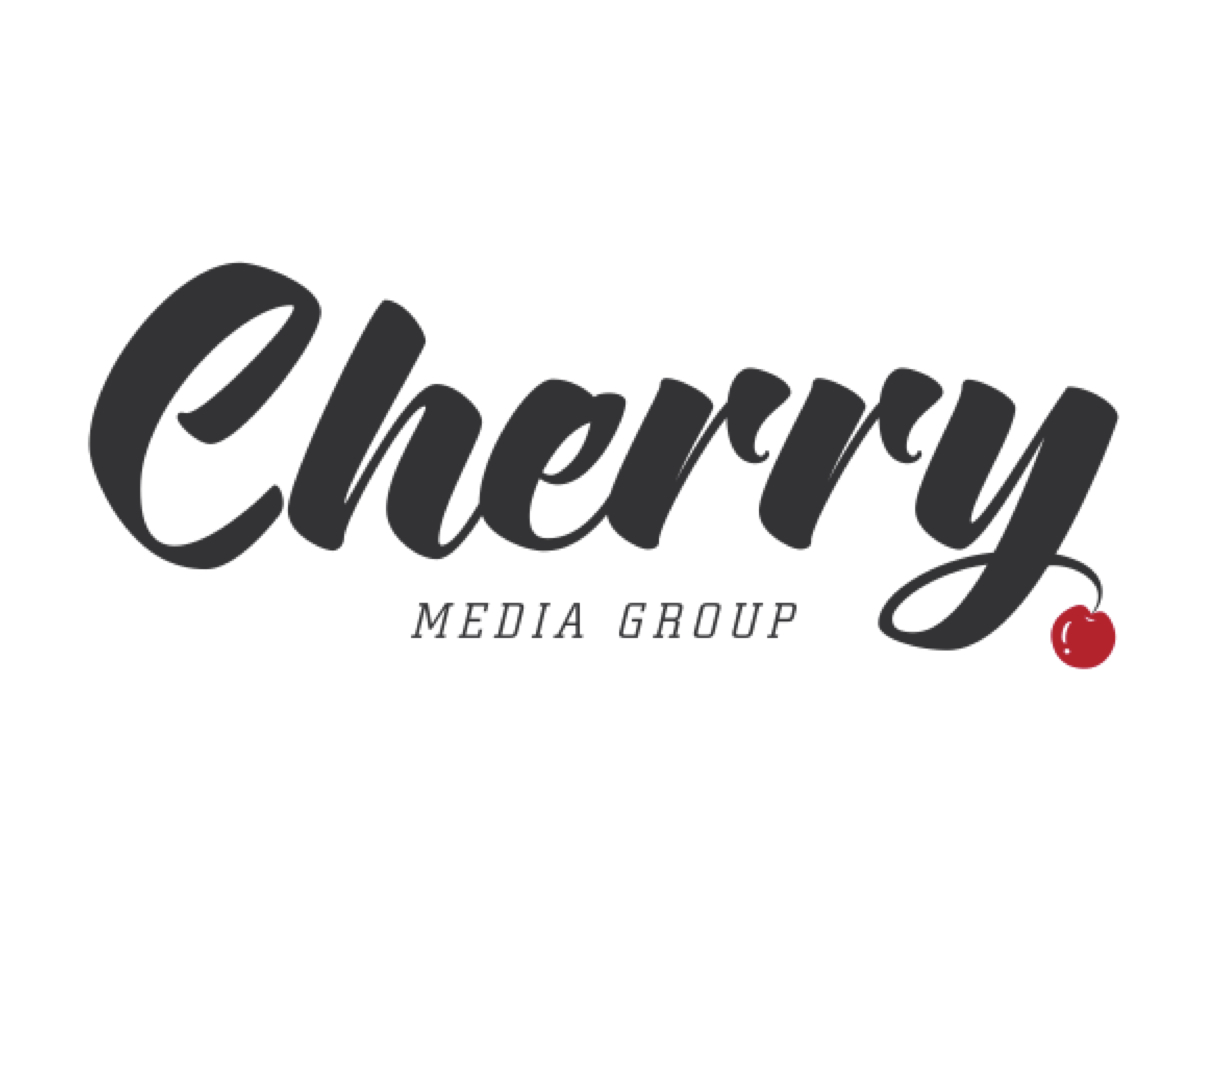 Cherry Media Goup logo.jpg